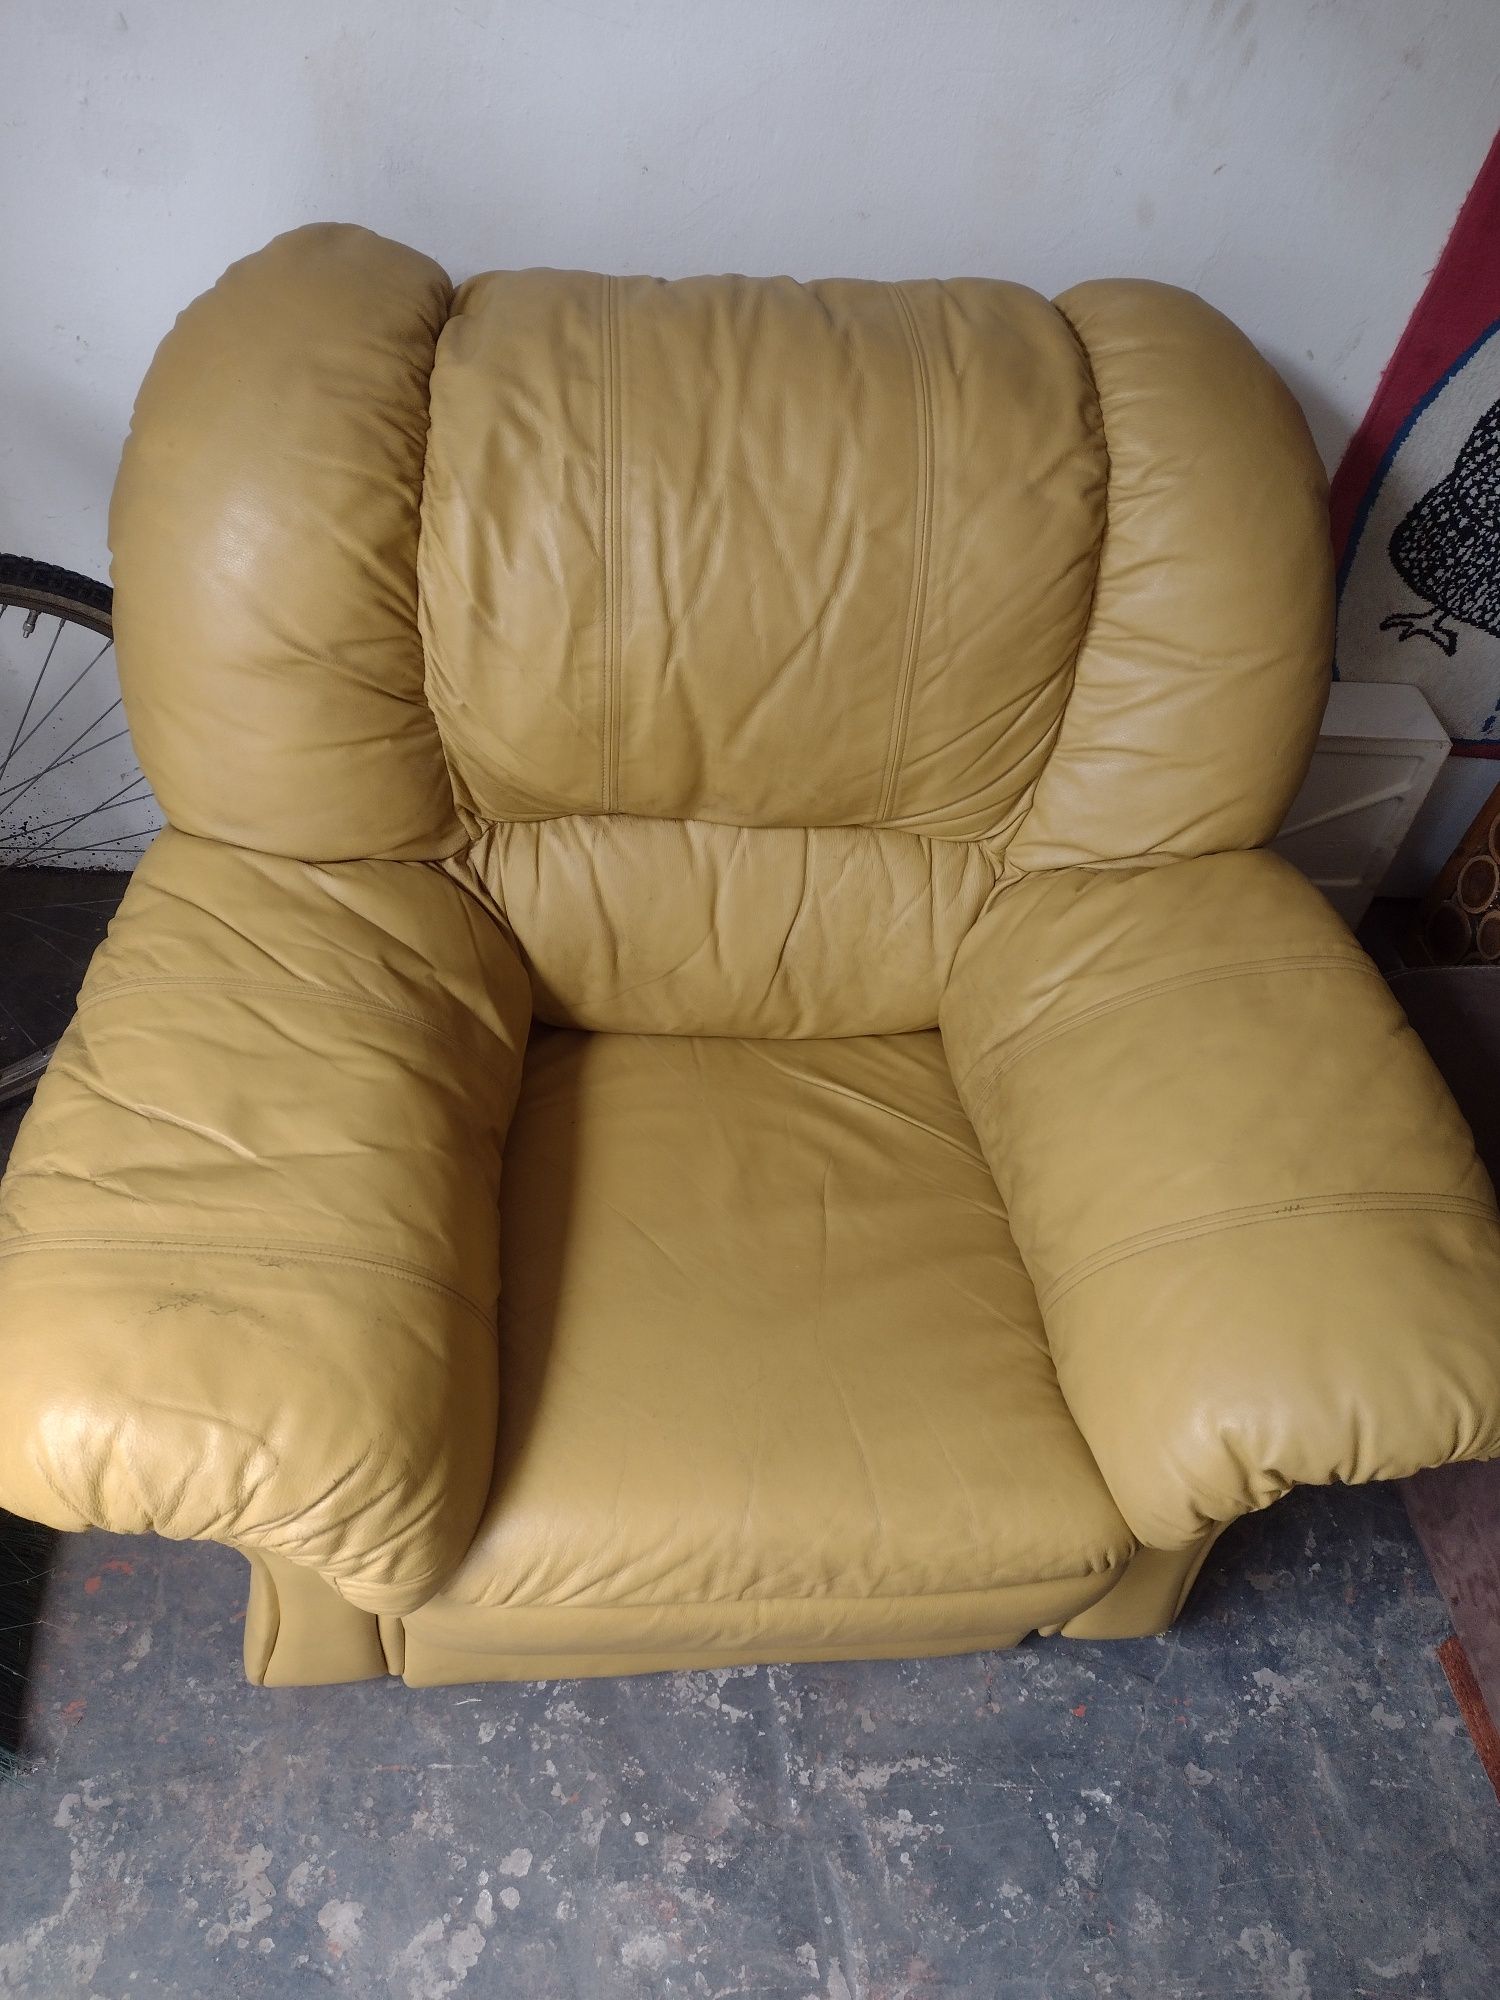 Żółty fotel skórzany tanio mistko